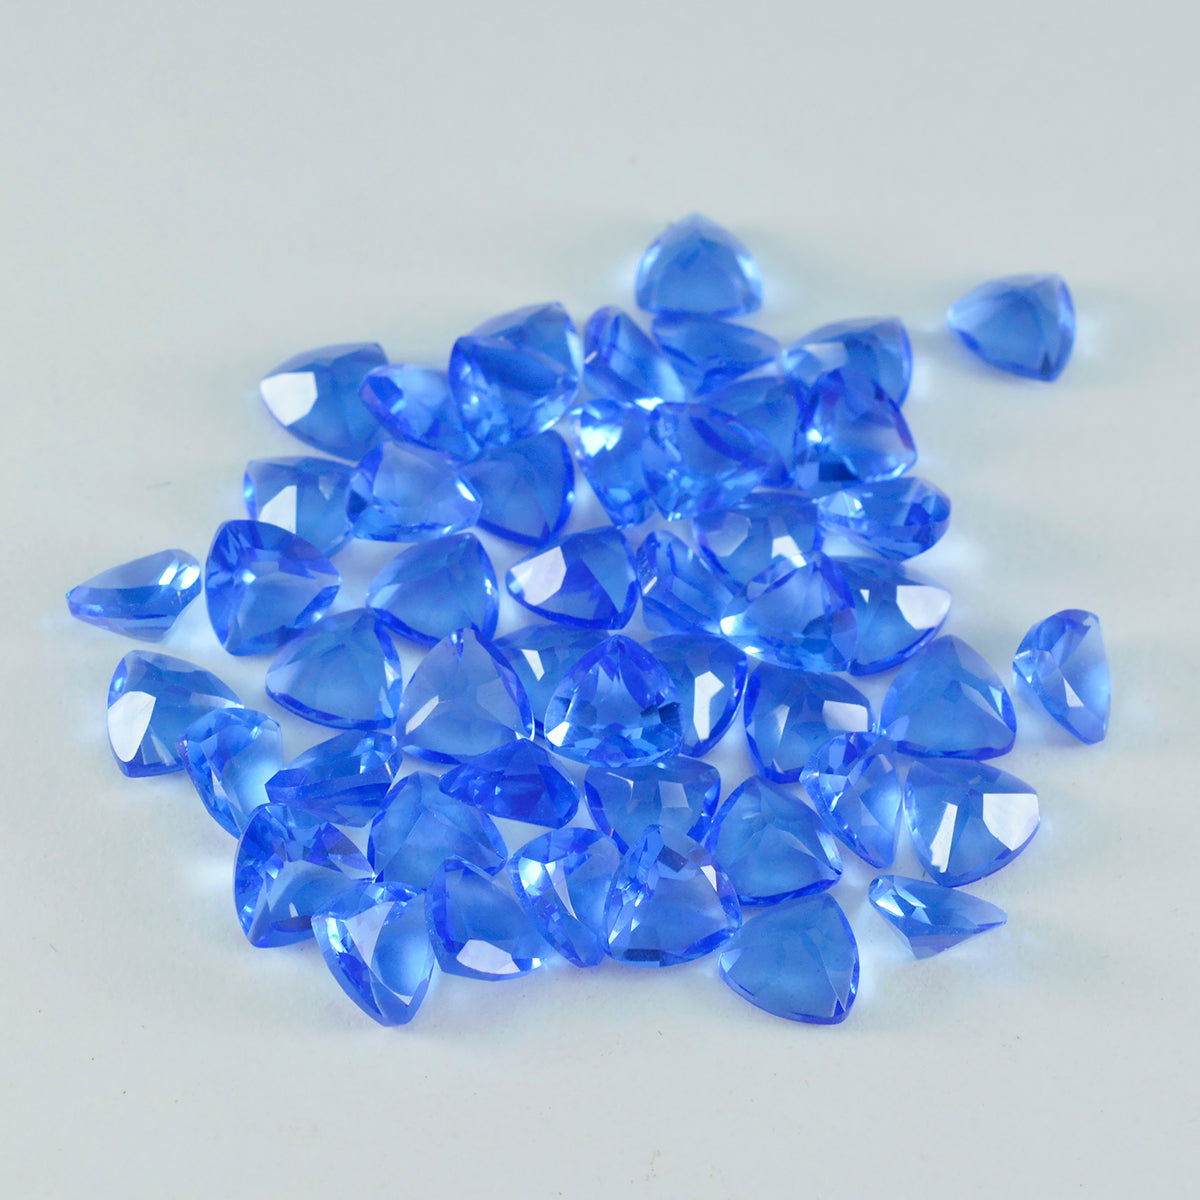 riyogems 1 шт. синий сапфир cz ограненный 8x8 мм форма триллиона прекрасного качества свободный драгоценный камень